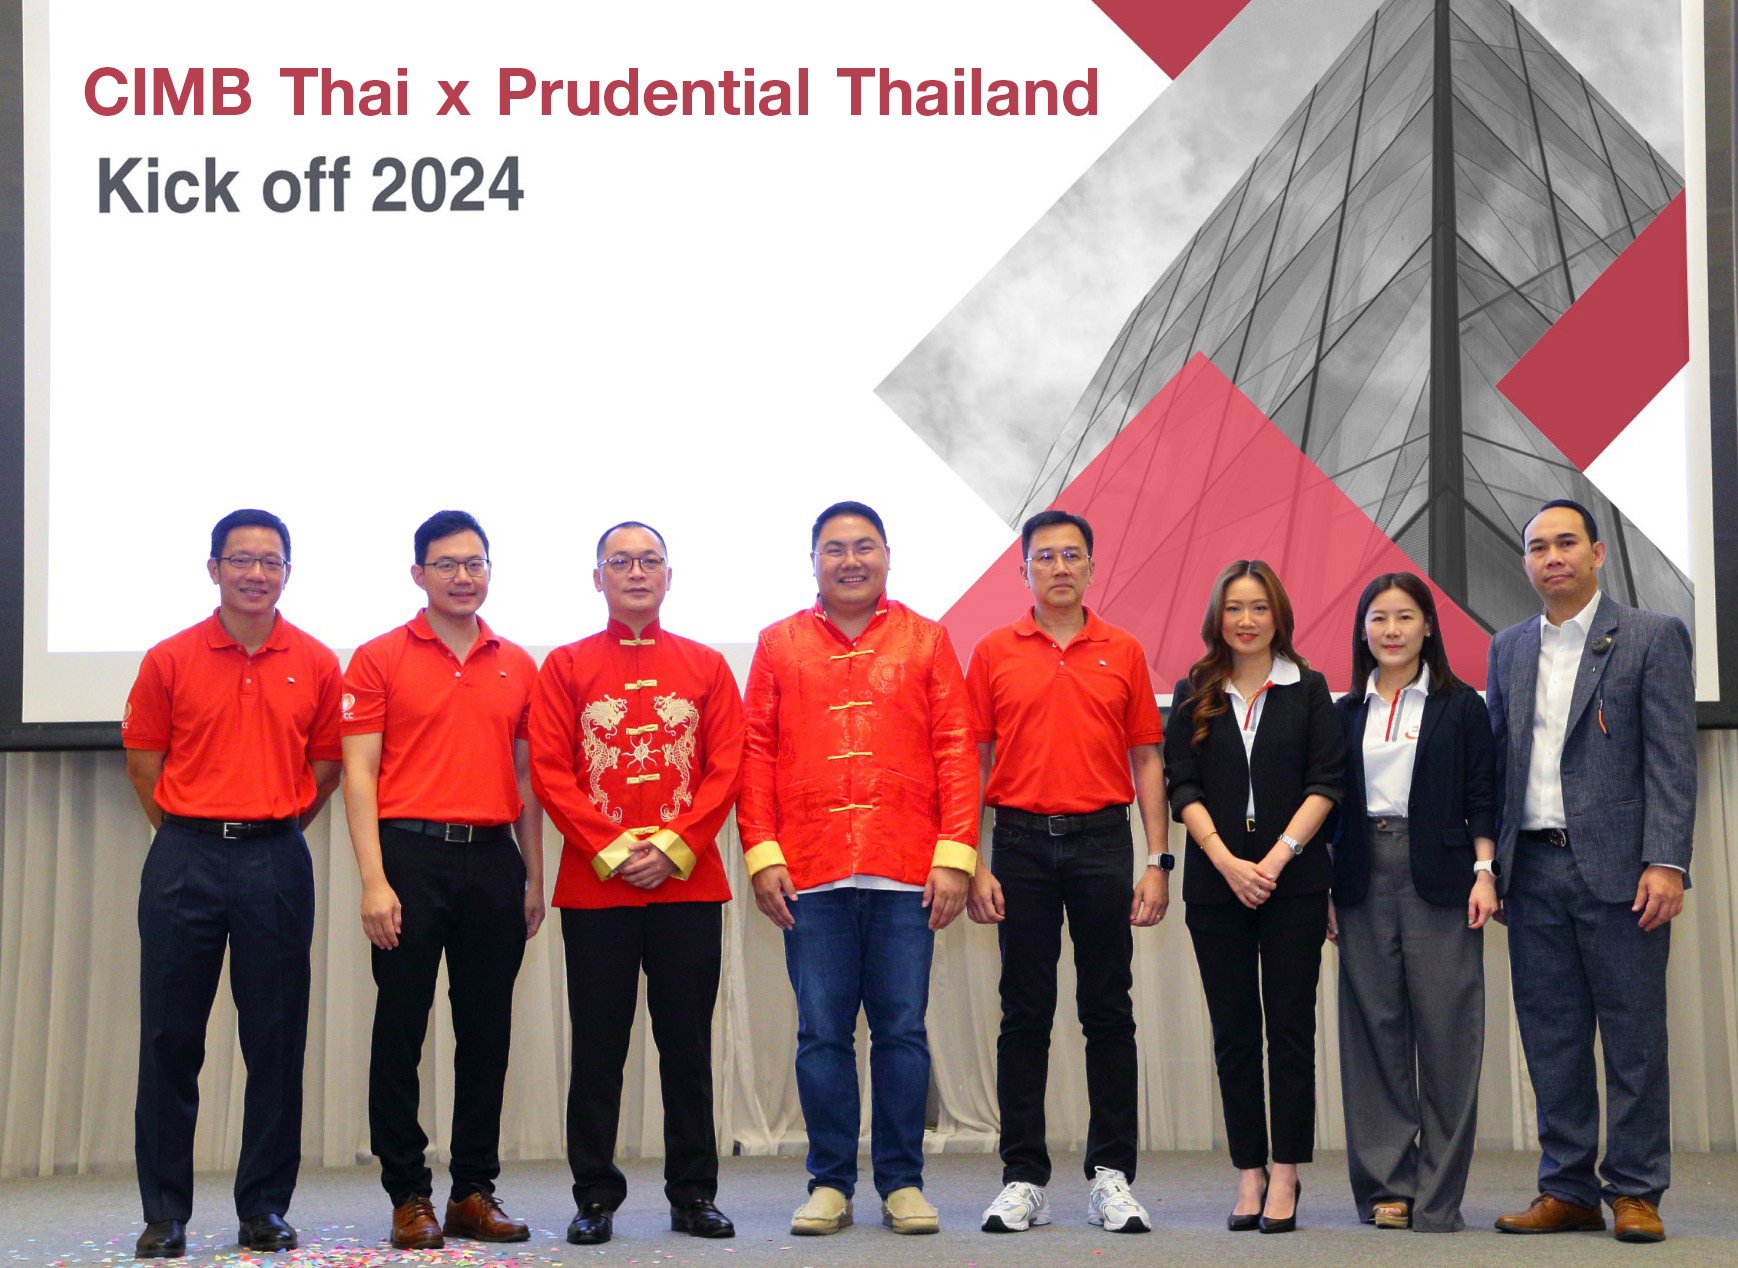 พรูเด็นเชียล ประเทศไทย ร่วมกับ ธนาคาร ซีไอเอ็มบี ไทยจัดงาน “CIMB Thai x Prudential Thailand Kick off 2024” เดินเกมรุกธุรกิจแบงก์แอสชัวรันส์